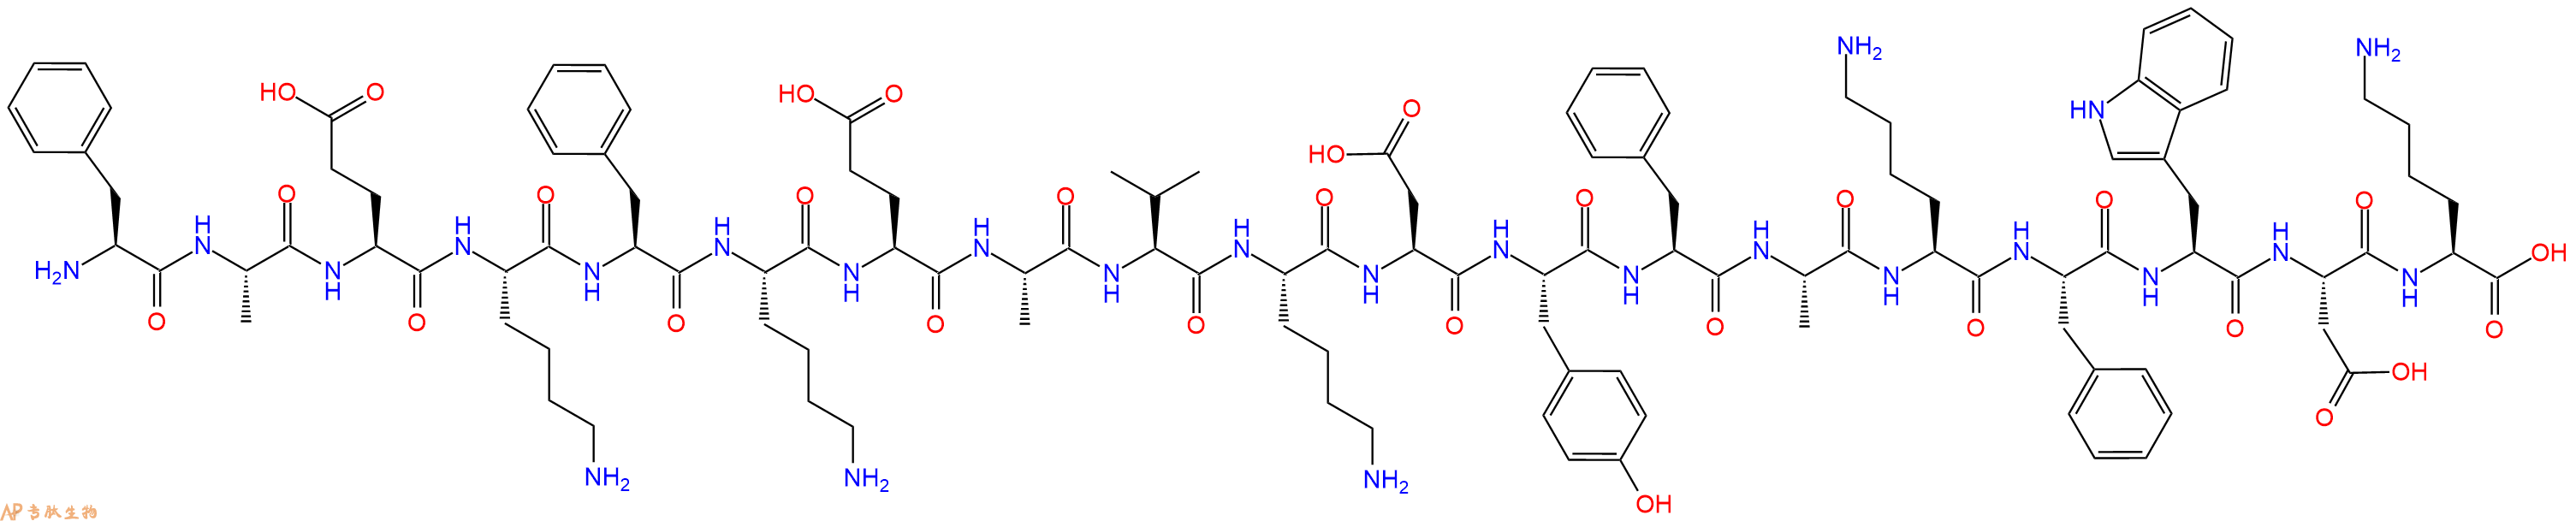 专肽生物产品H2N-Phe-Ala-Glu-Lys-Phe-Lys-Glu-Ala-Val-Lys-Asp-Ty